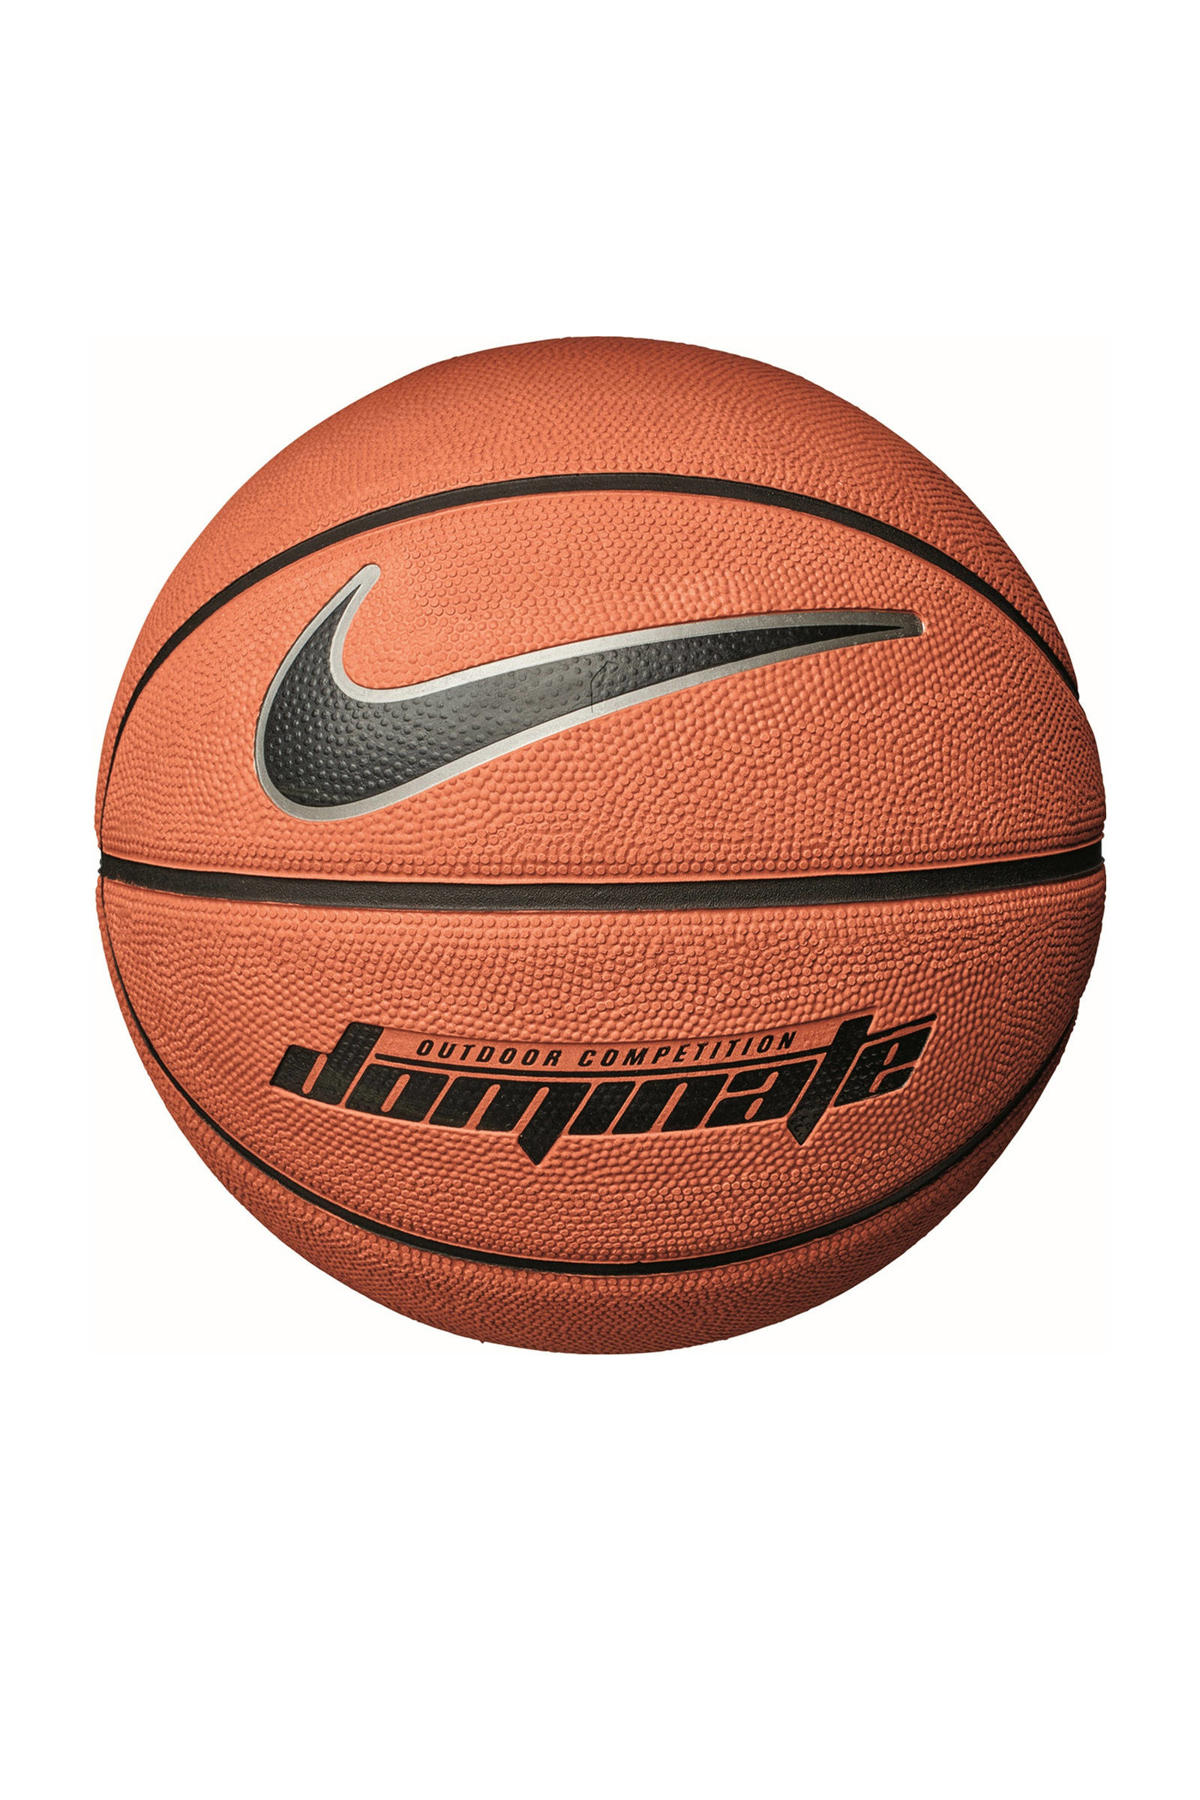 zakdoek Creatie Badkamer Nike basketbal kopen? | Morgen in huis | wehkamp